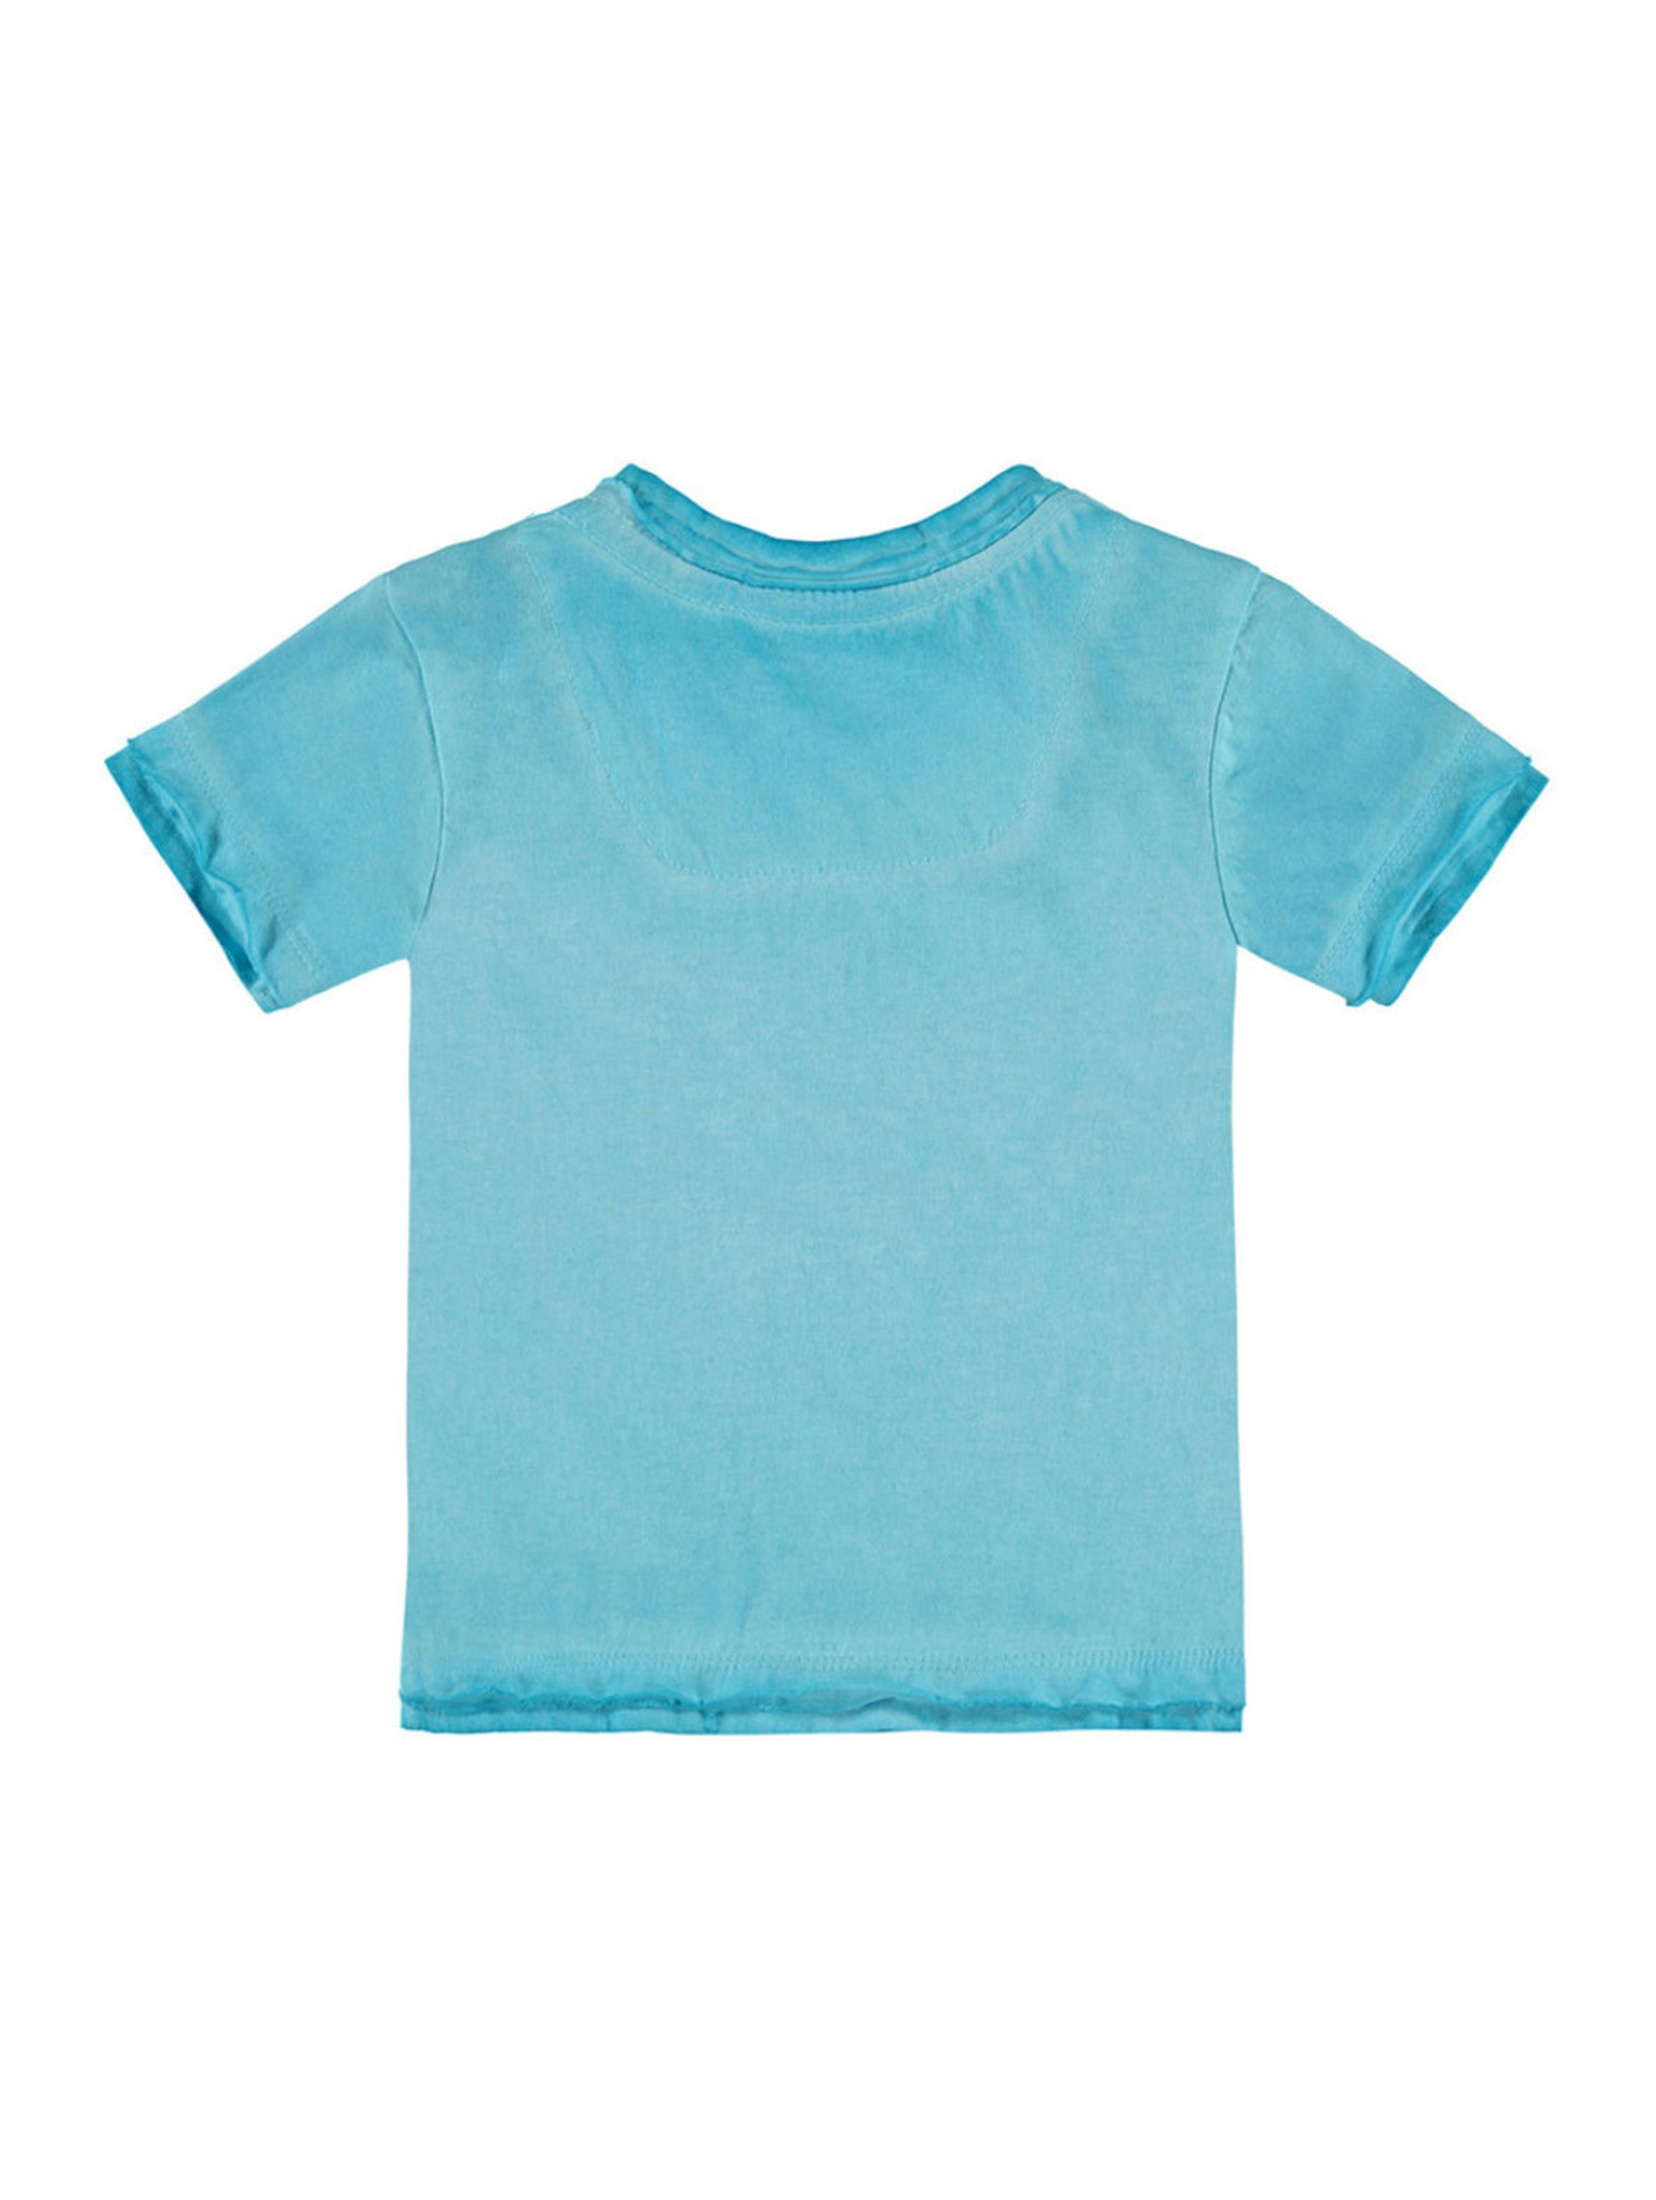 Chłopięca niemowlęca bluzka z krótkim rękawem niebieska